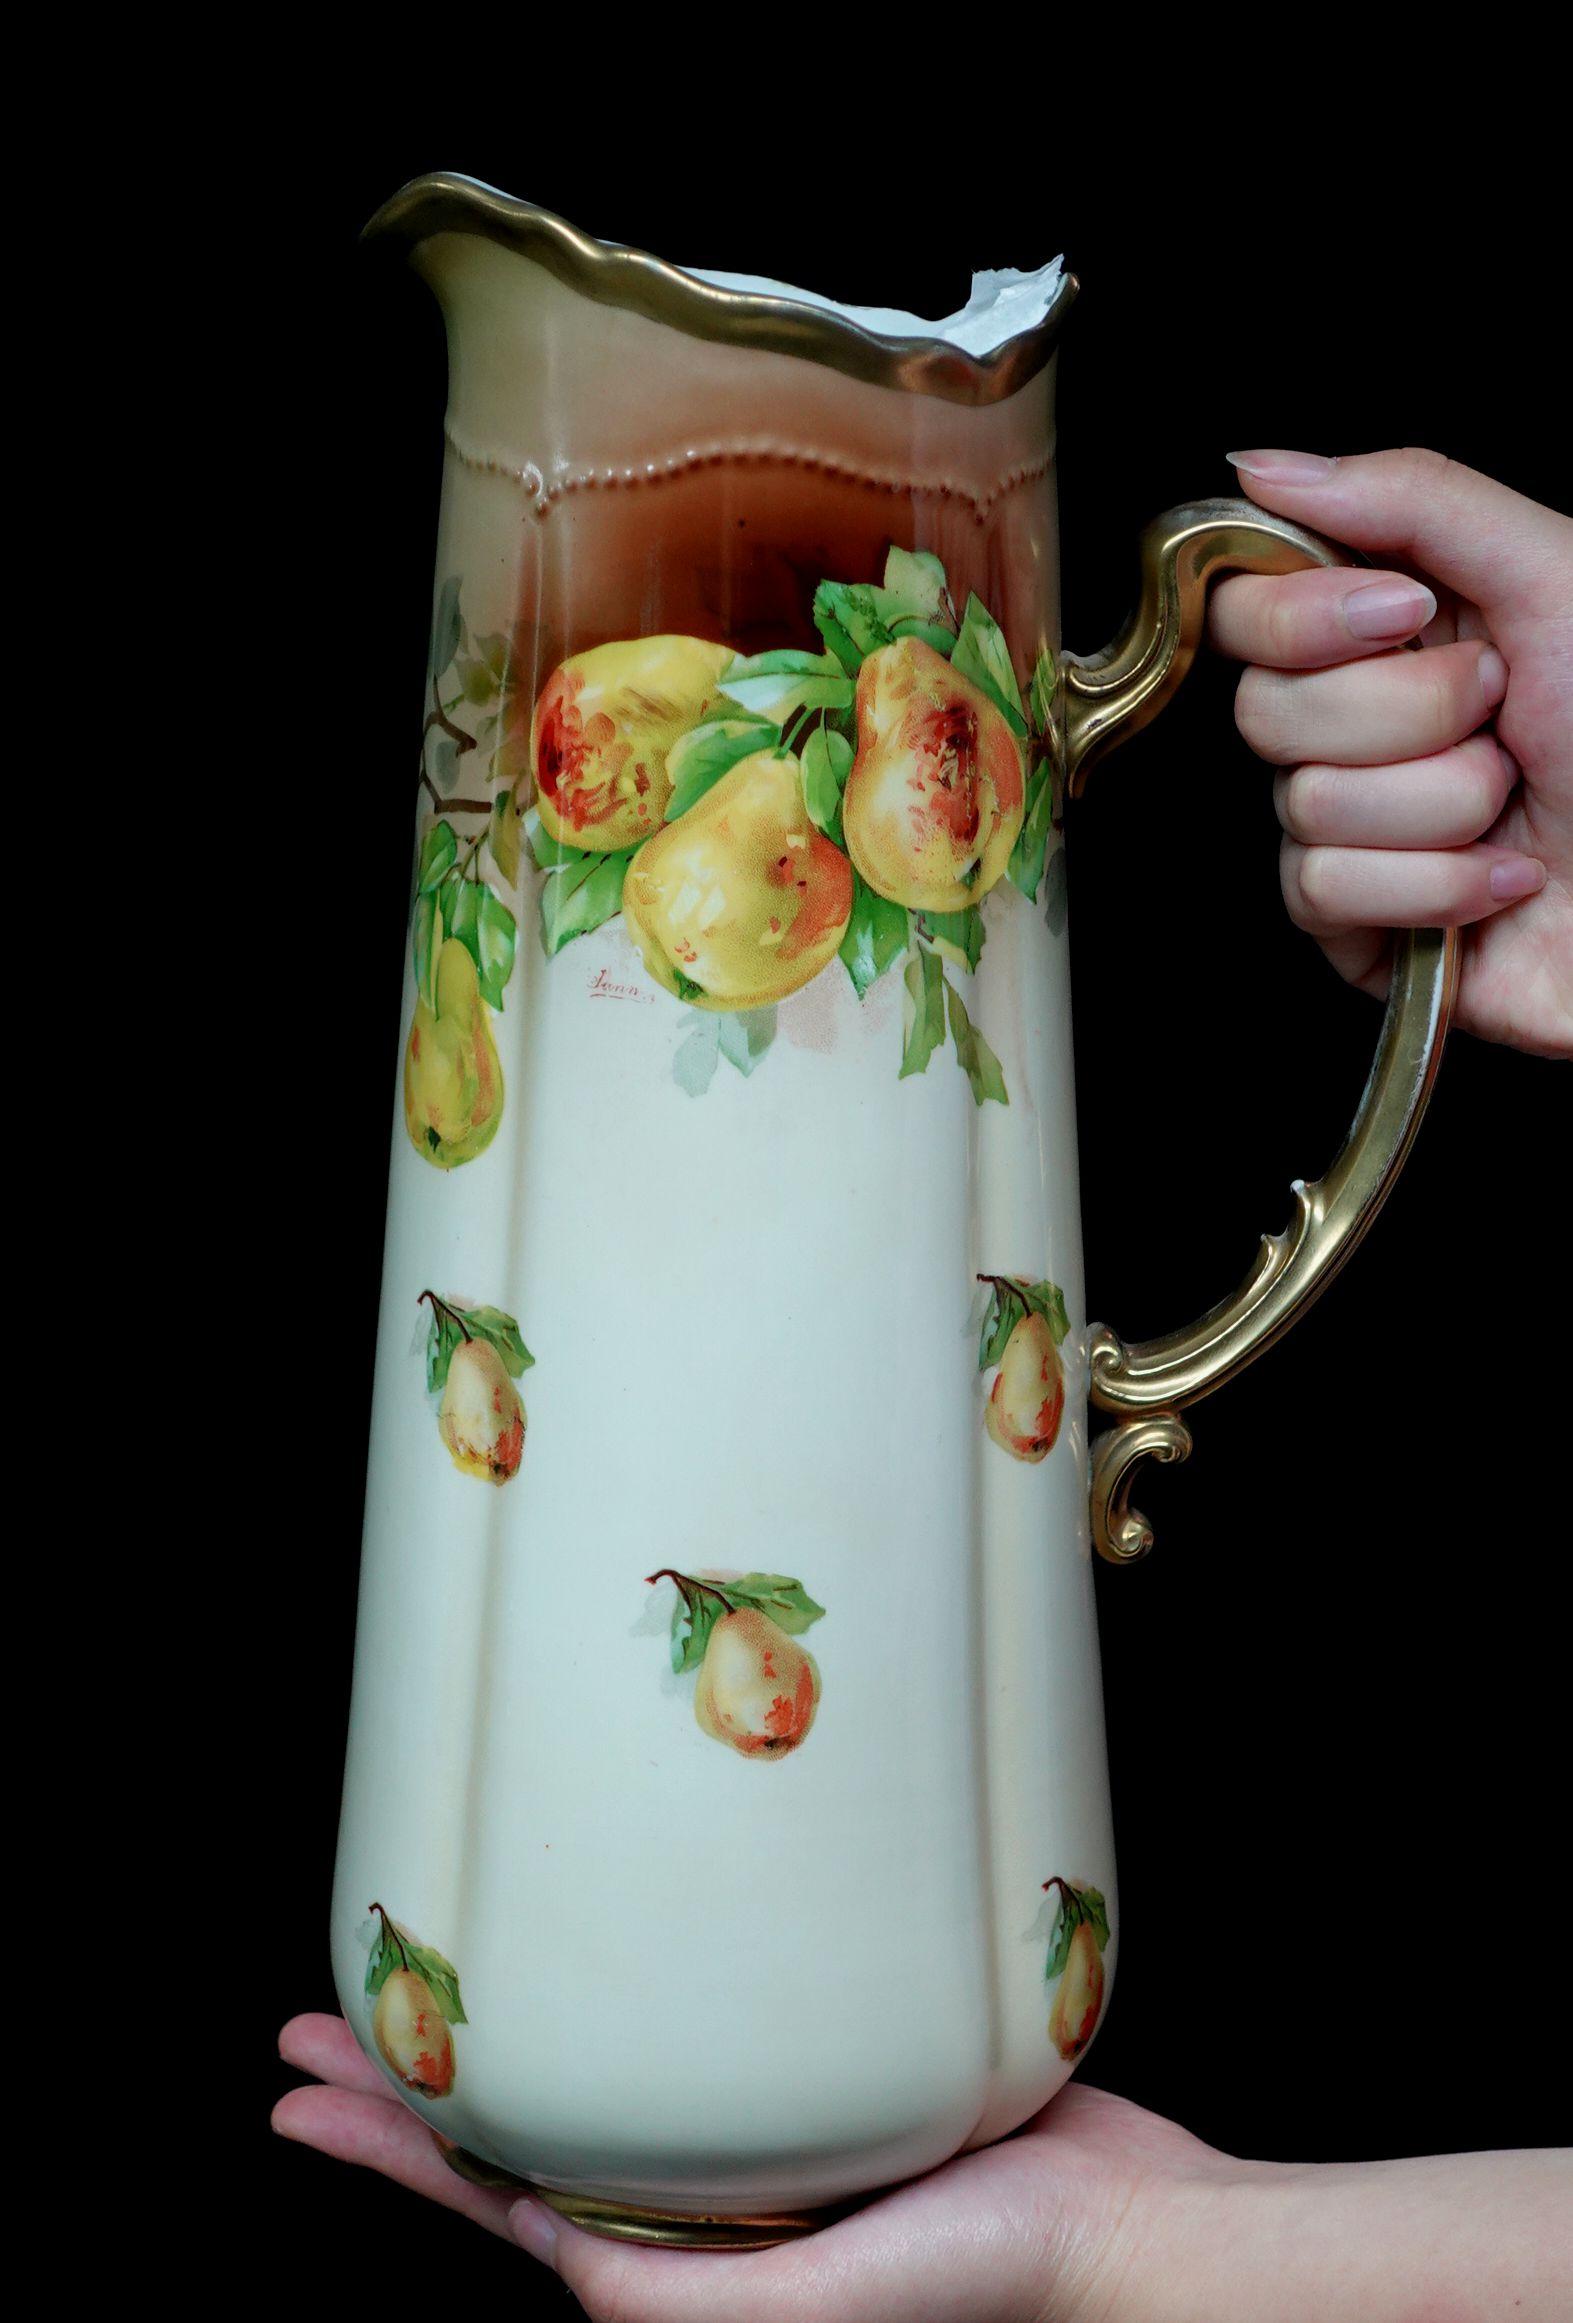 Une magnifique chope royale autrichienne ancienne, 100% peinte à la main, avec des fruits, des poires en jaune et orange, et des feuilles vertes, un arrangement délicat de la composition, une seule poire peinte au hasard sur la chope et la couleur